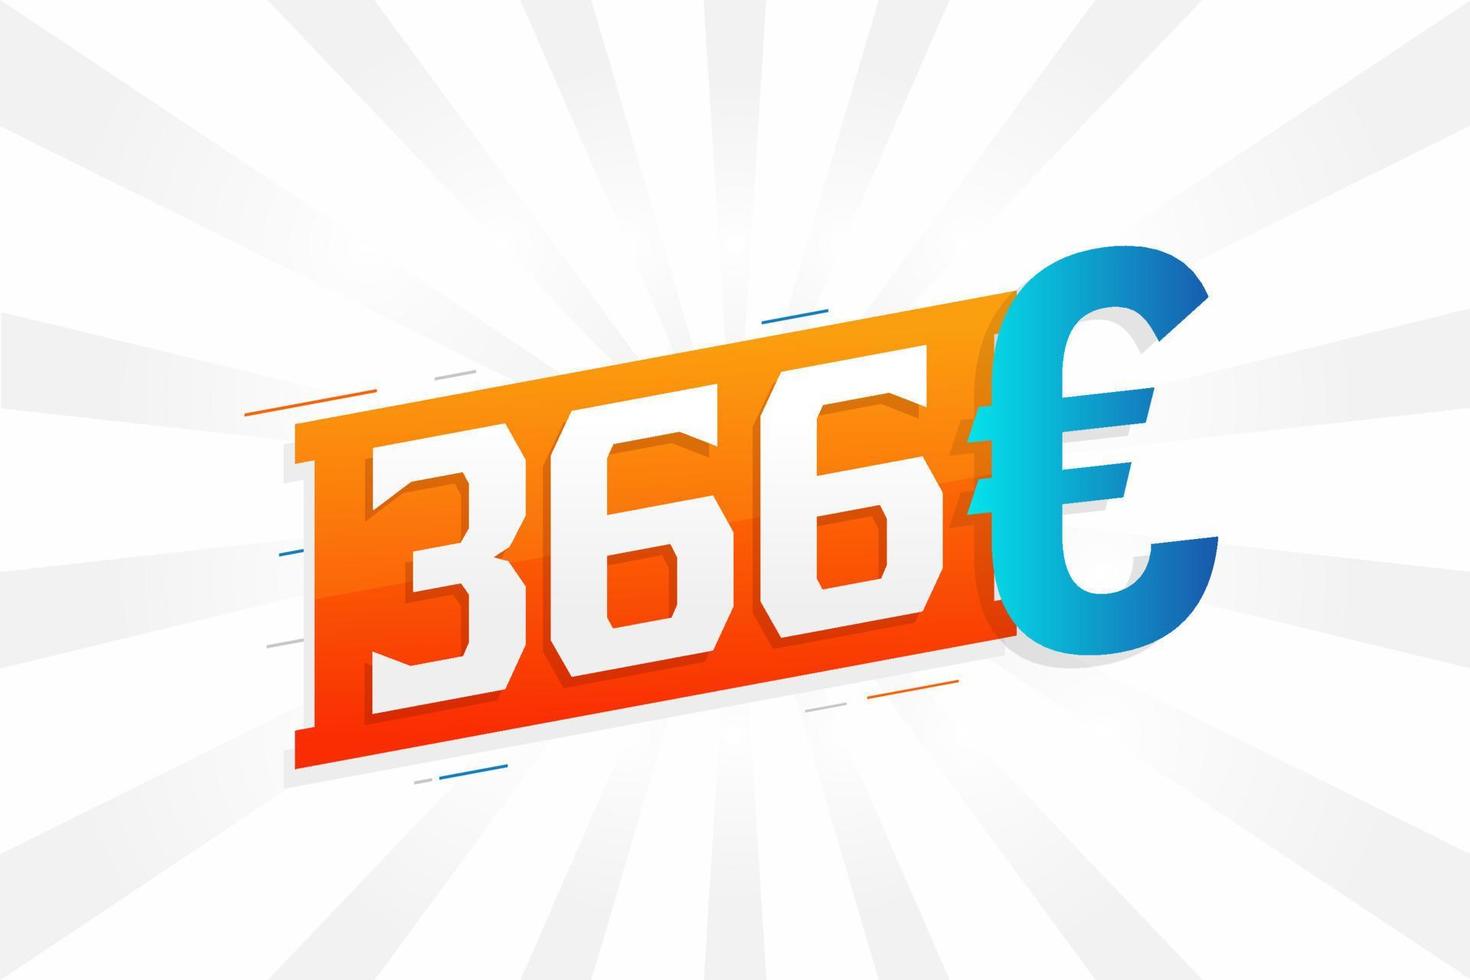 366 symbole de texte vectoriel de devise euro. 366 euros vecteur de stock d'argent de l'union européenne